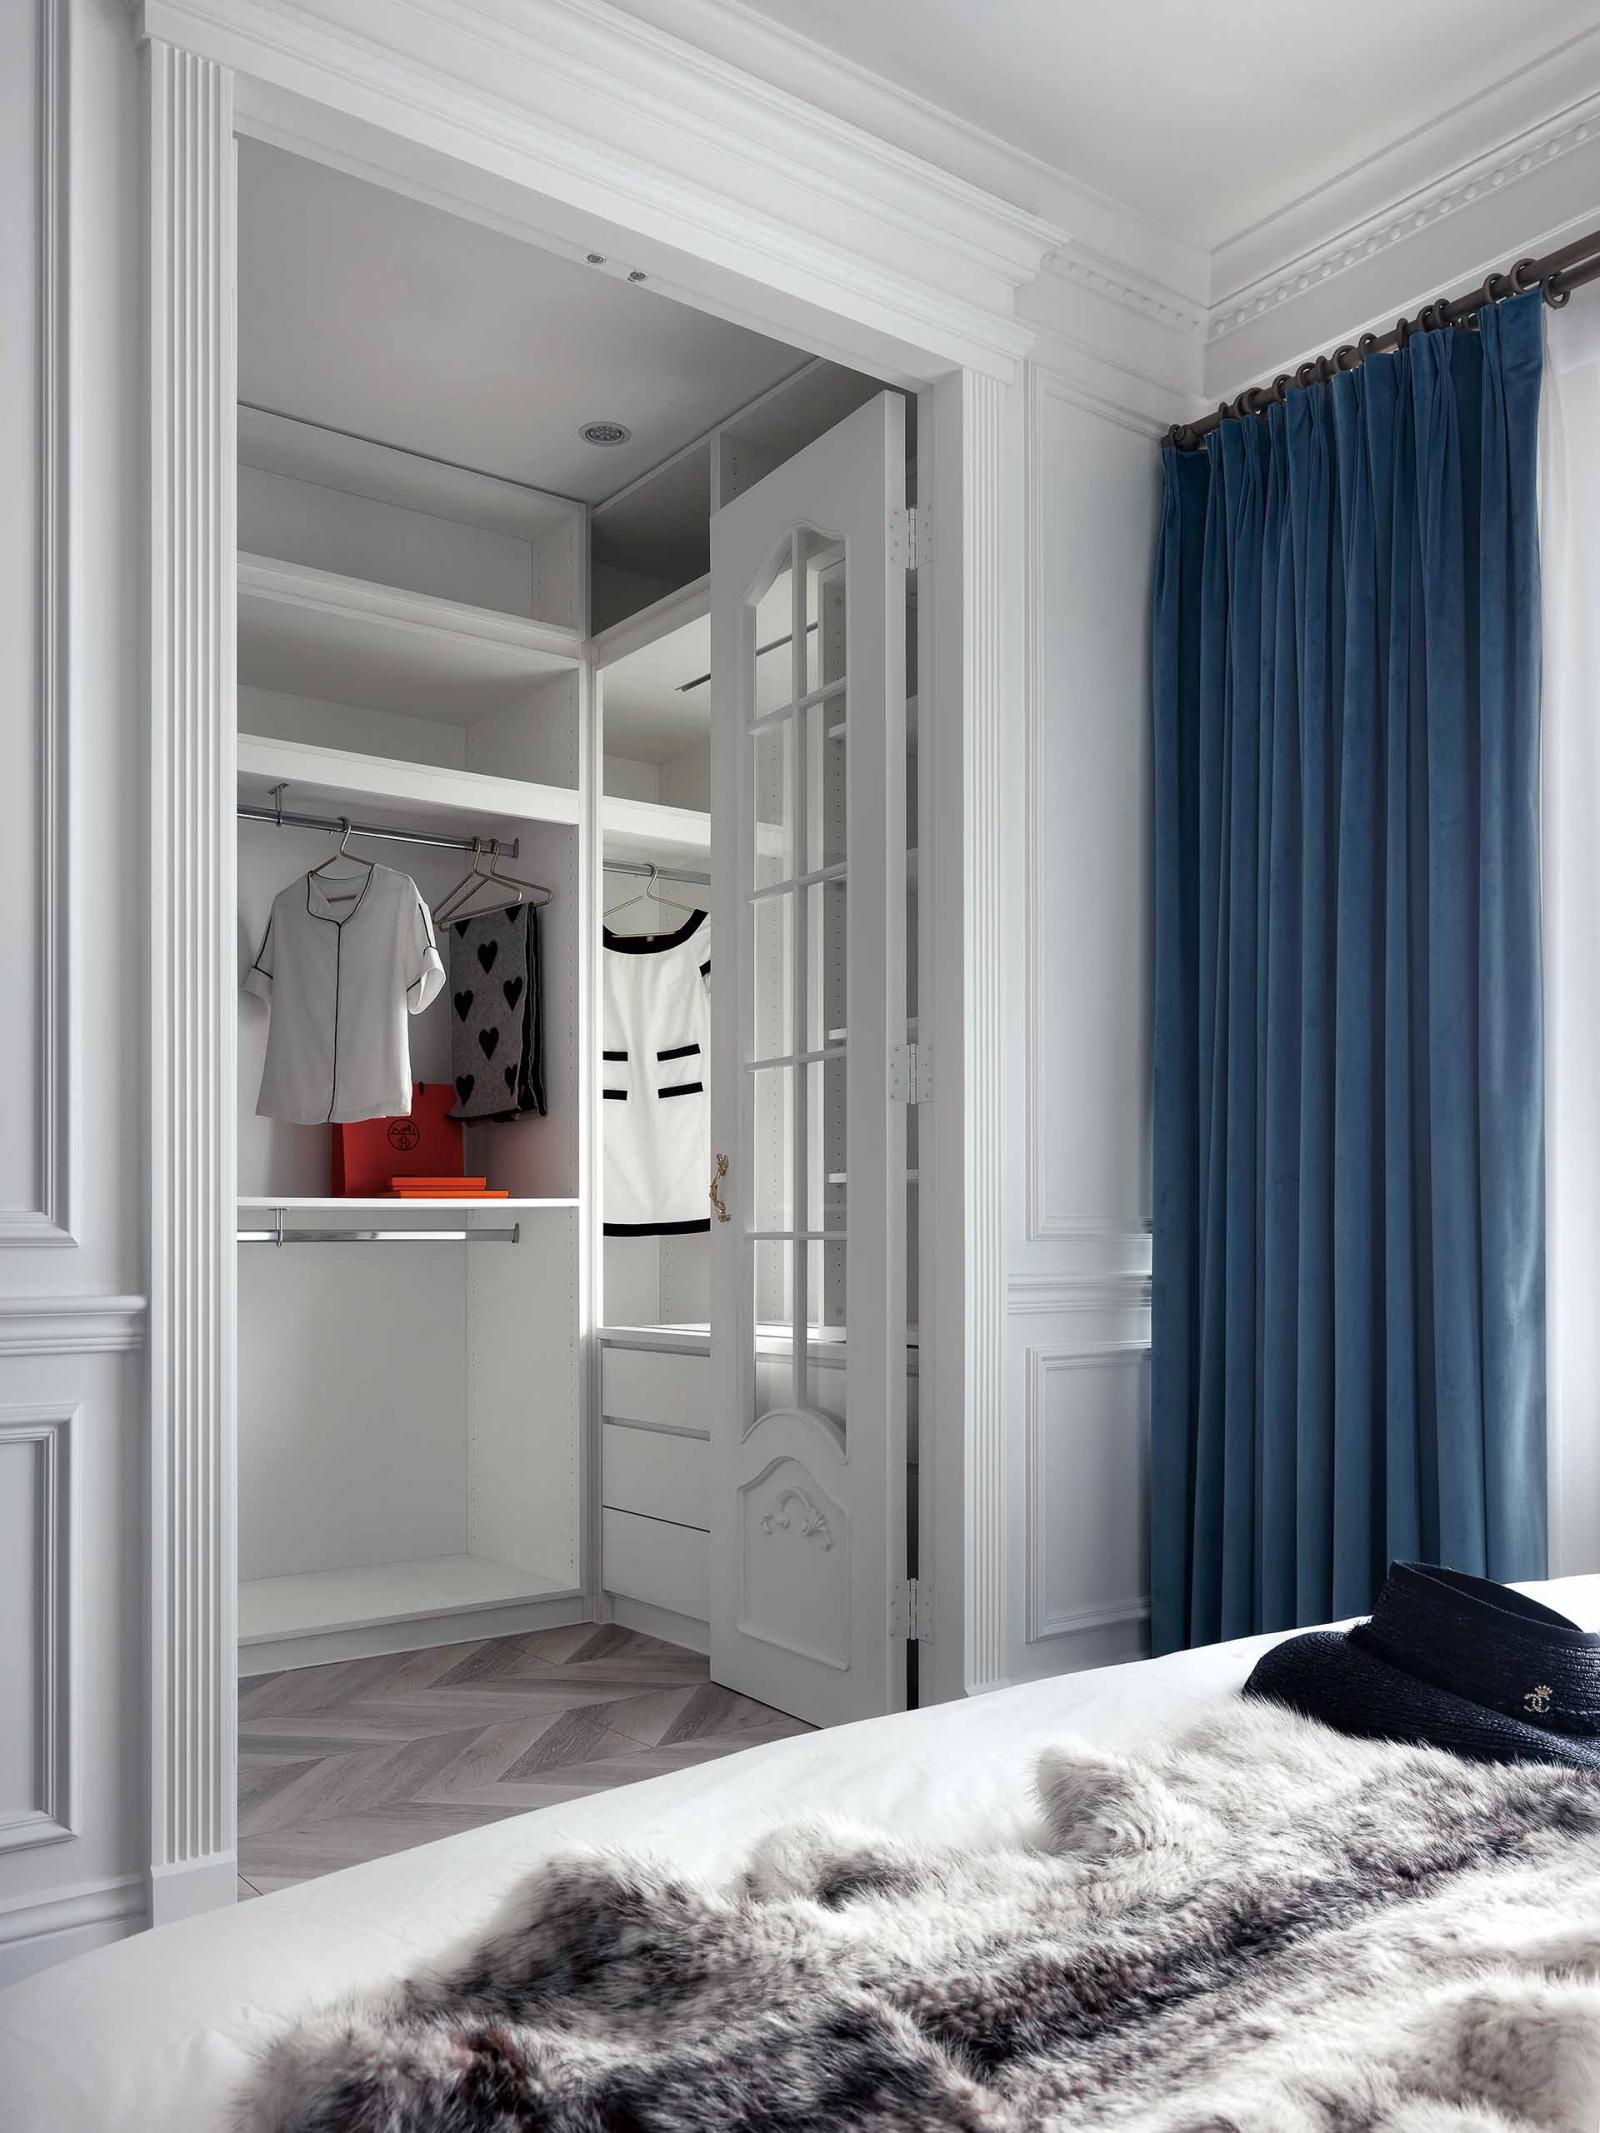 睡眠区附设的更衣间入口采对开玻璃门设计,兼具精致度与光影穿透感